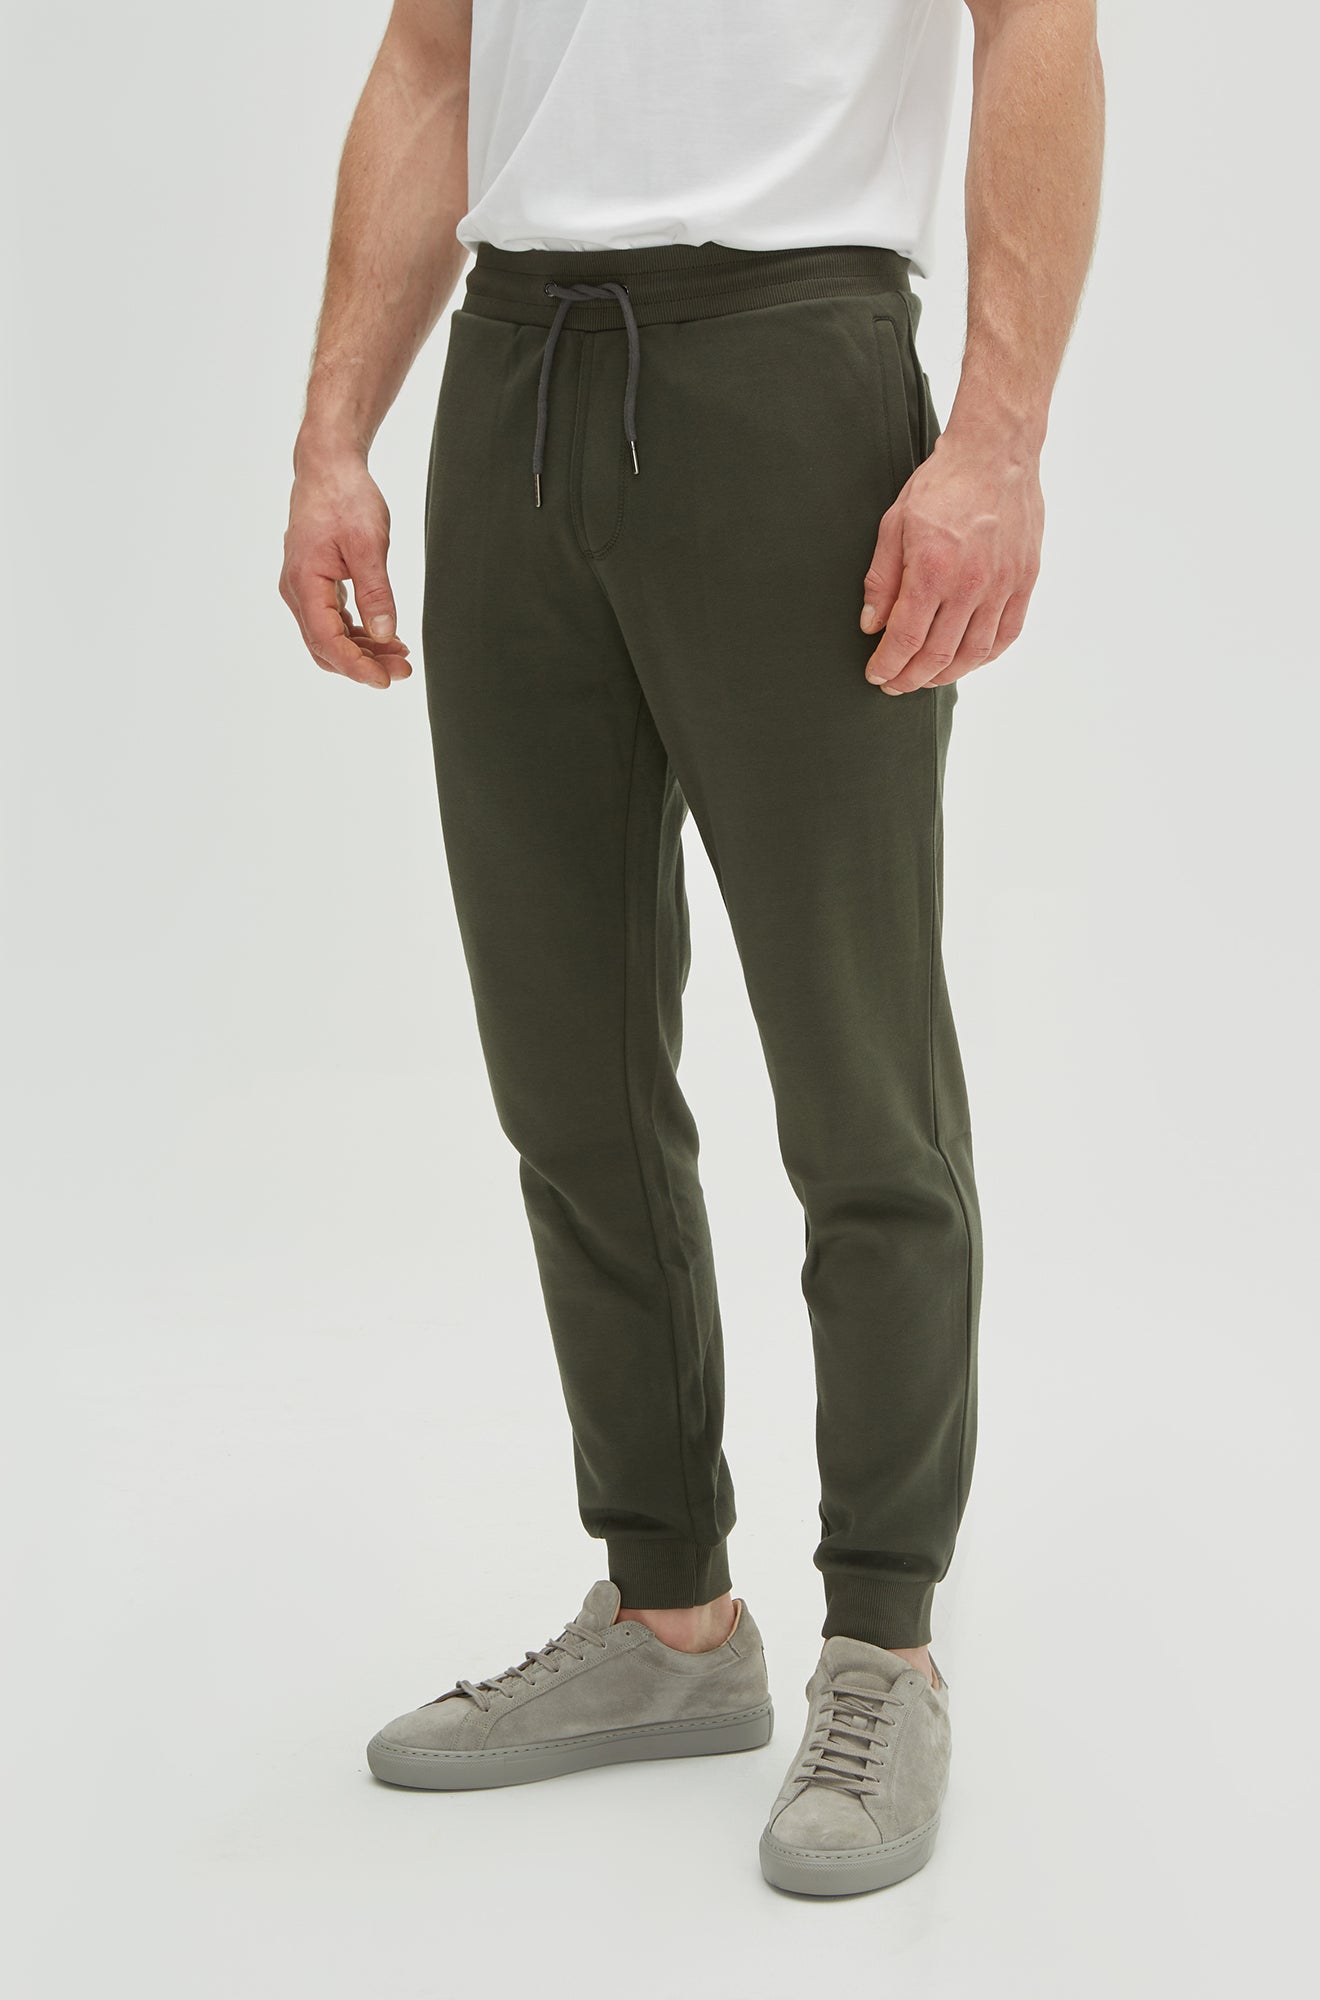 Pantalon pour homme par Robert Barakett | RB01344 Cortina Soldier Green | Boutique Vvög, vêtements mode pour homme et femme